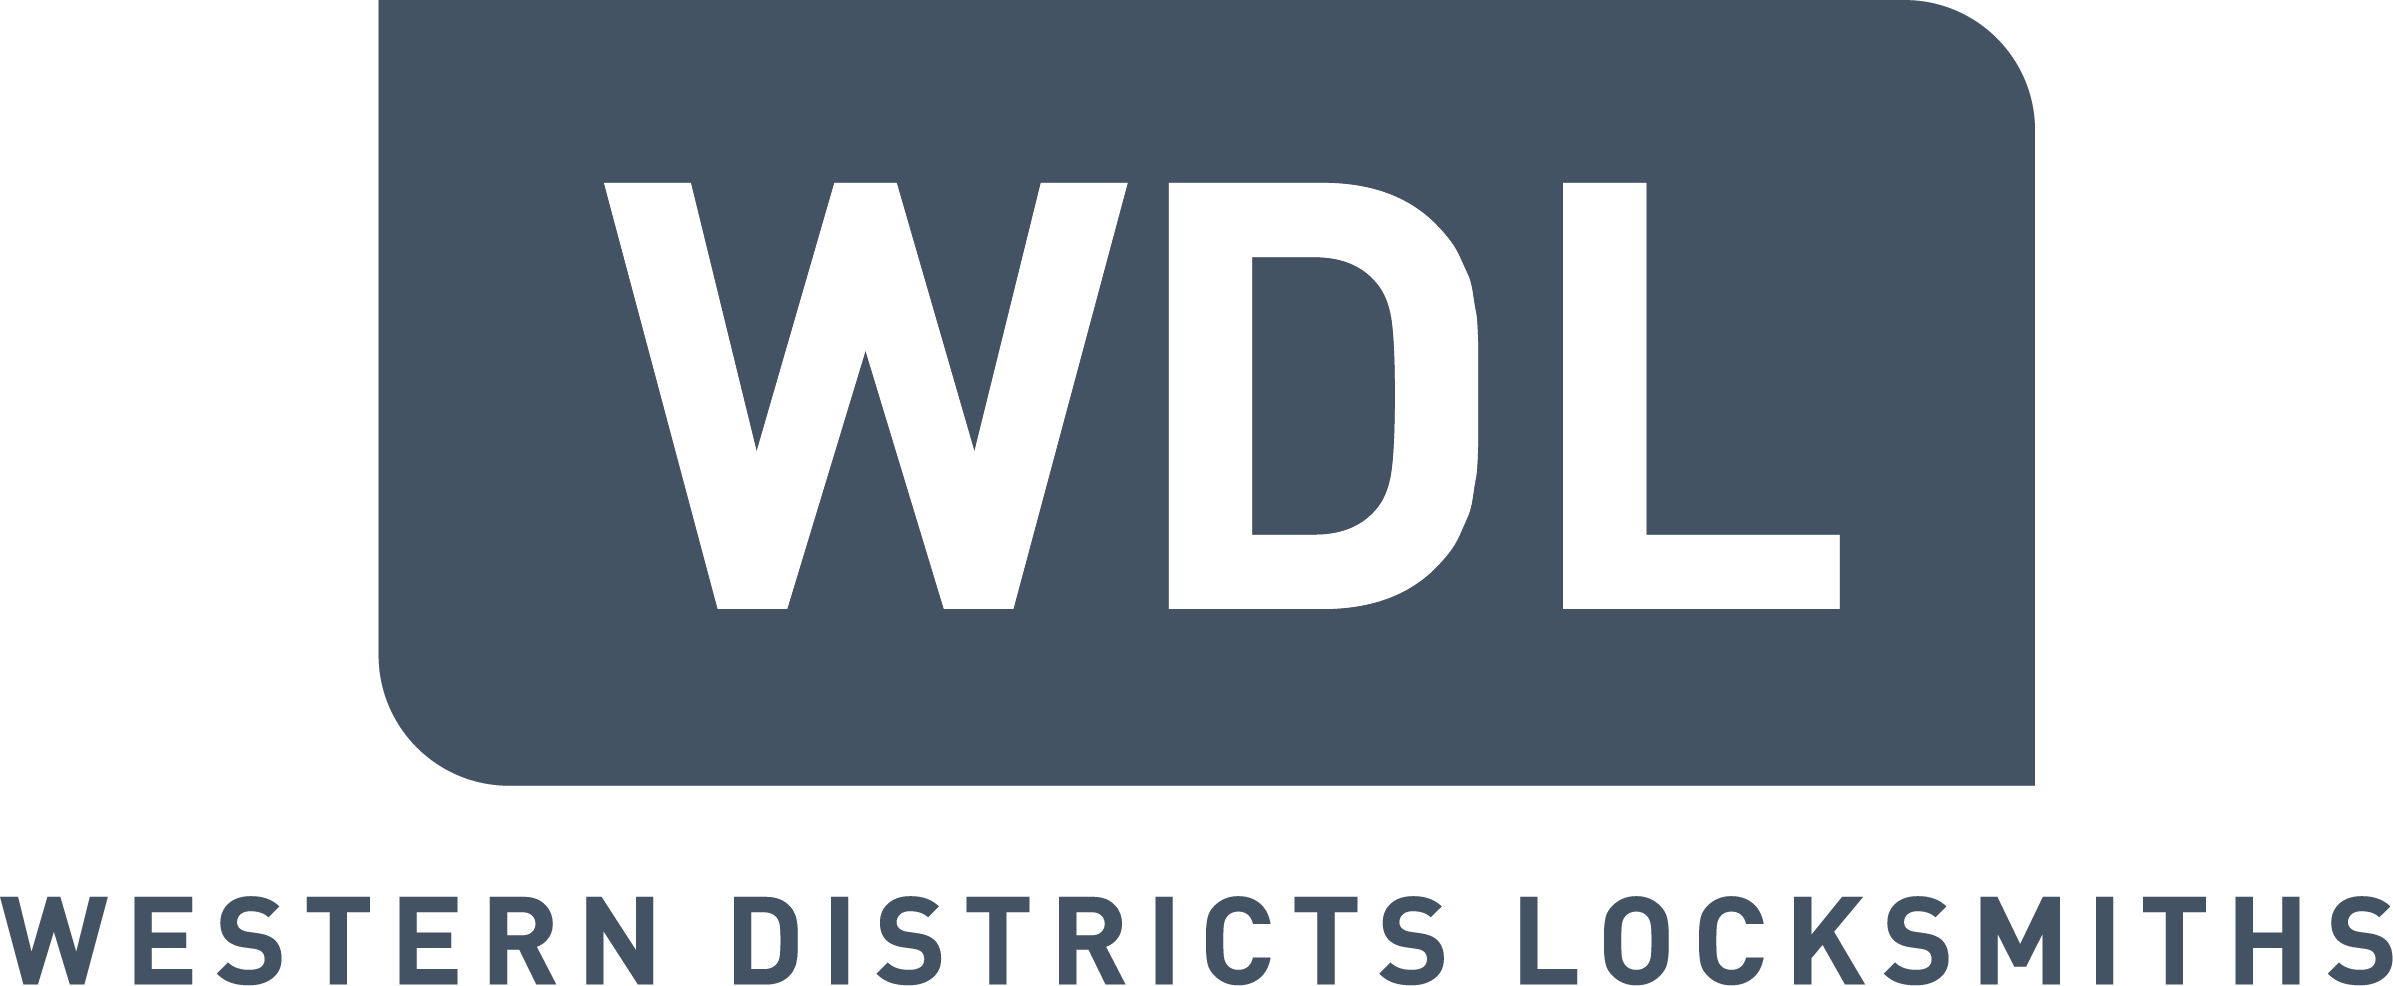 Western District Locksmiths logo